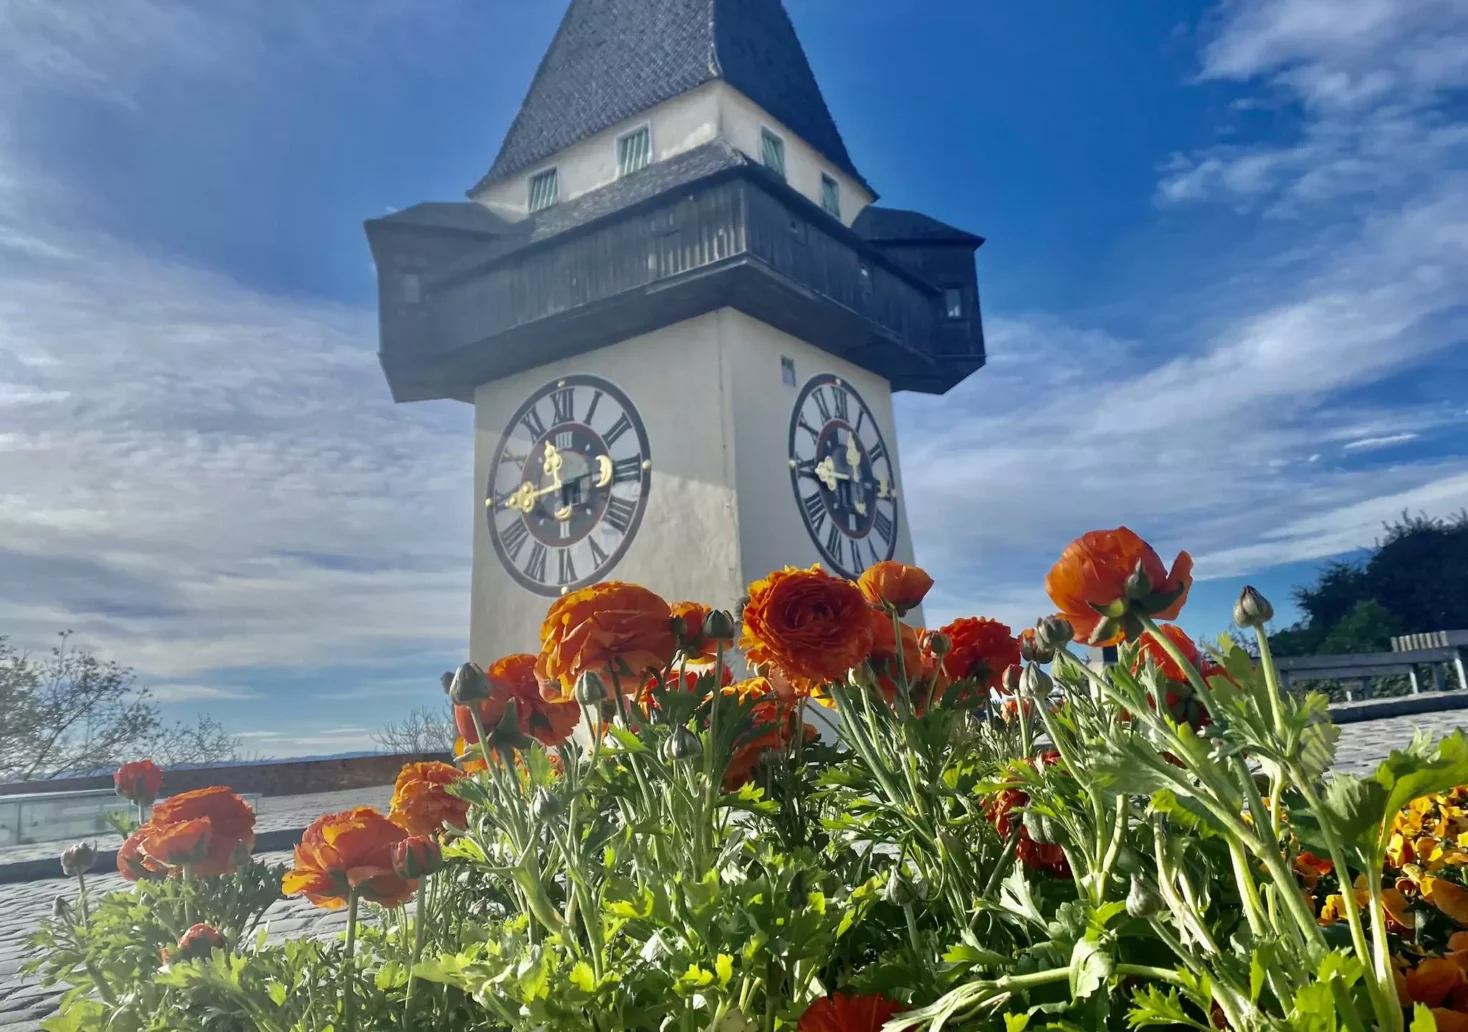 Bild auf 5min.at zeigt die Blütenpracht am Grazer Schlossberg.